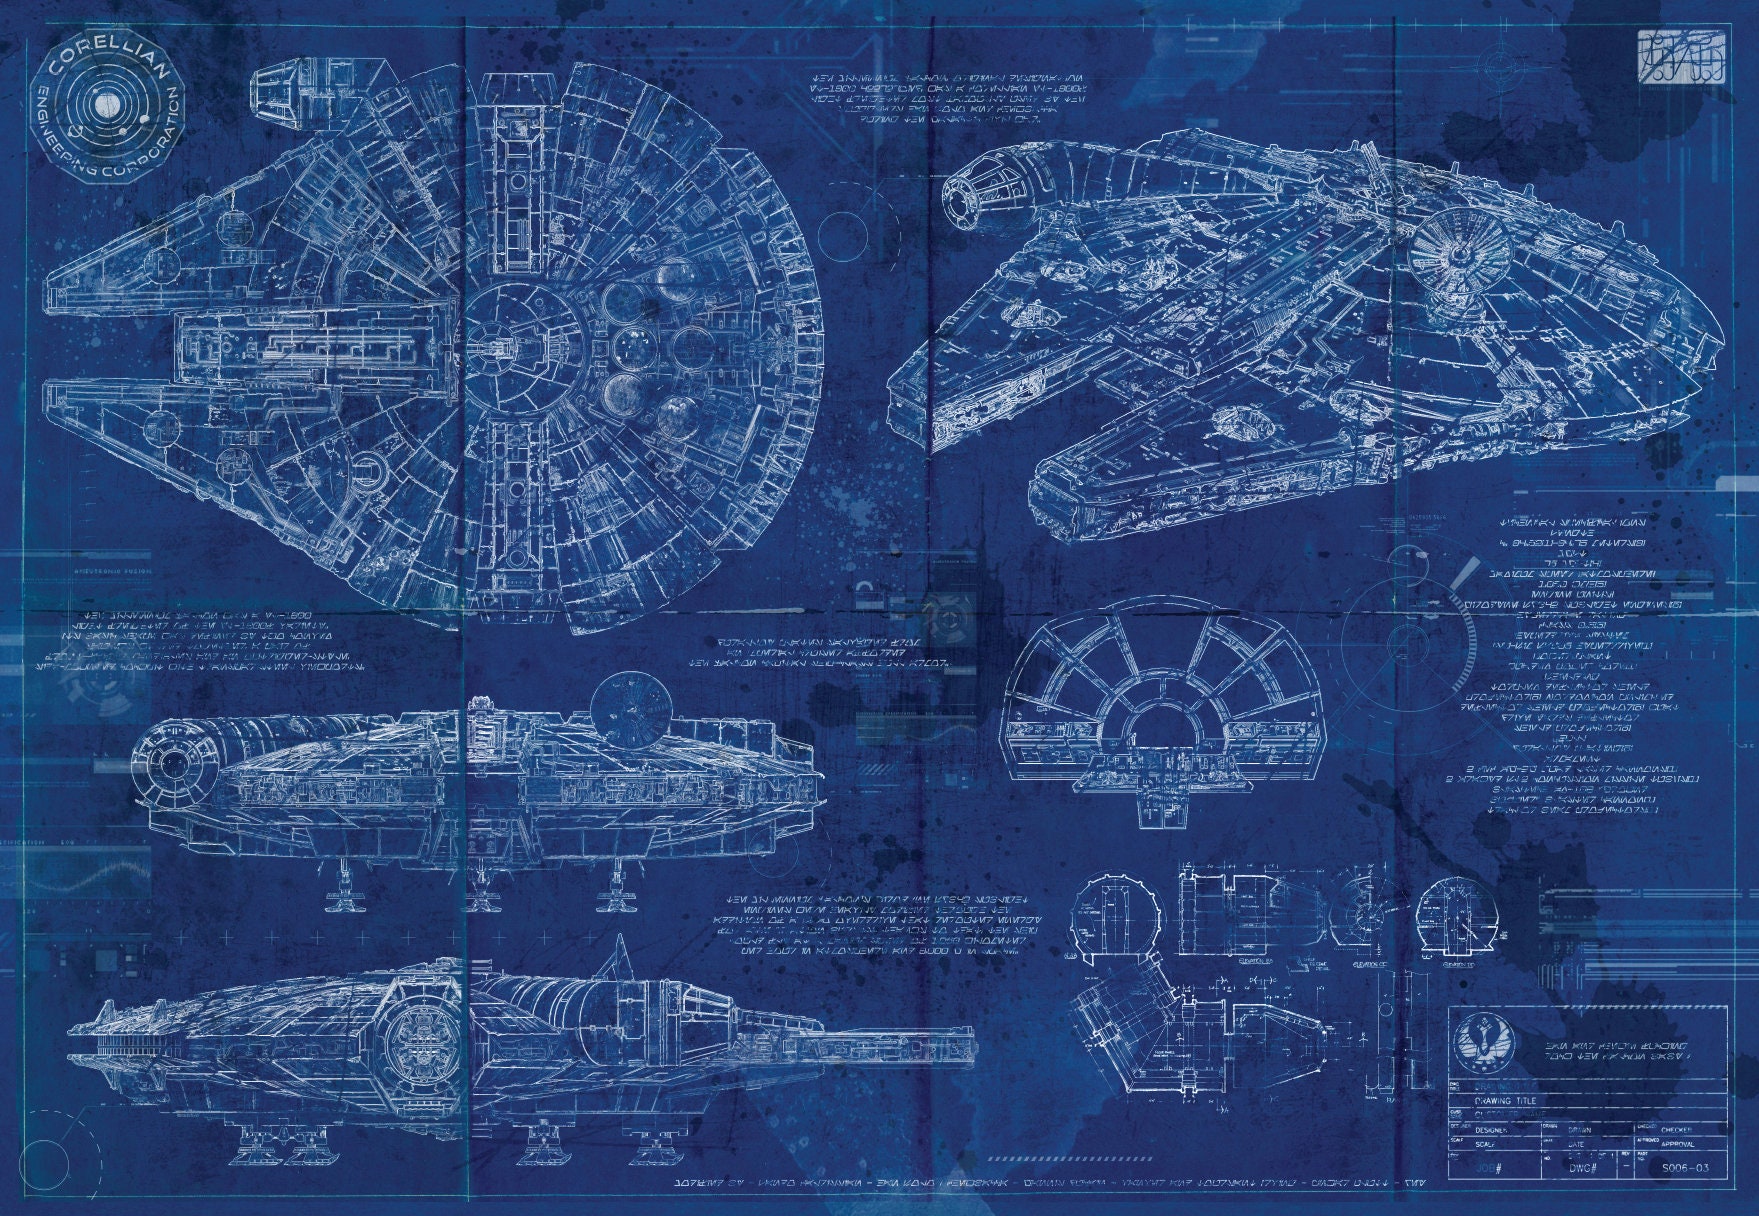 Star Wars Millennium Falcon Movie Large CANVAS Art Print Gift A0 A1 A2 A3 A4